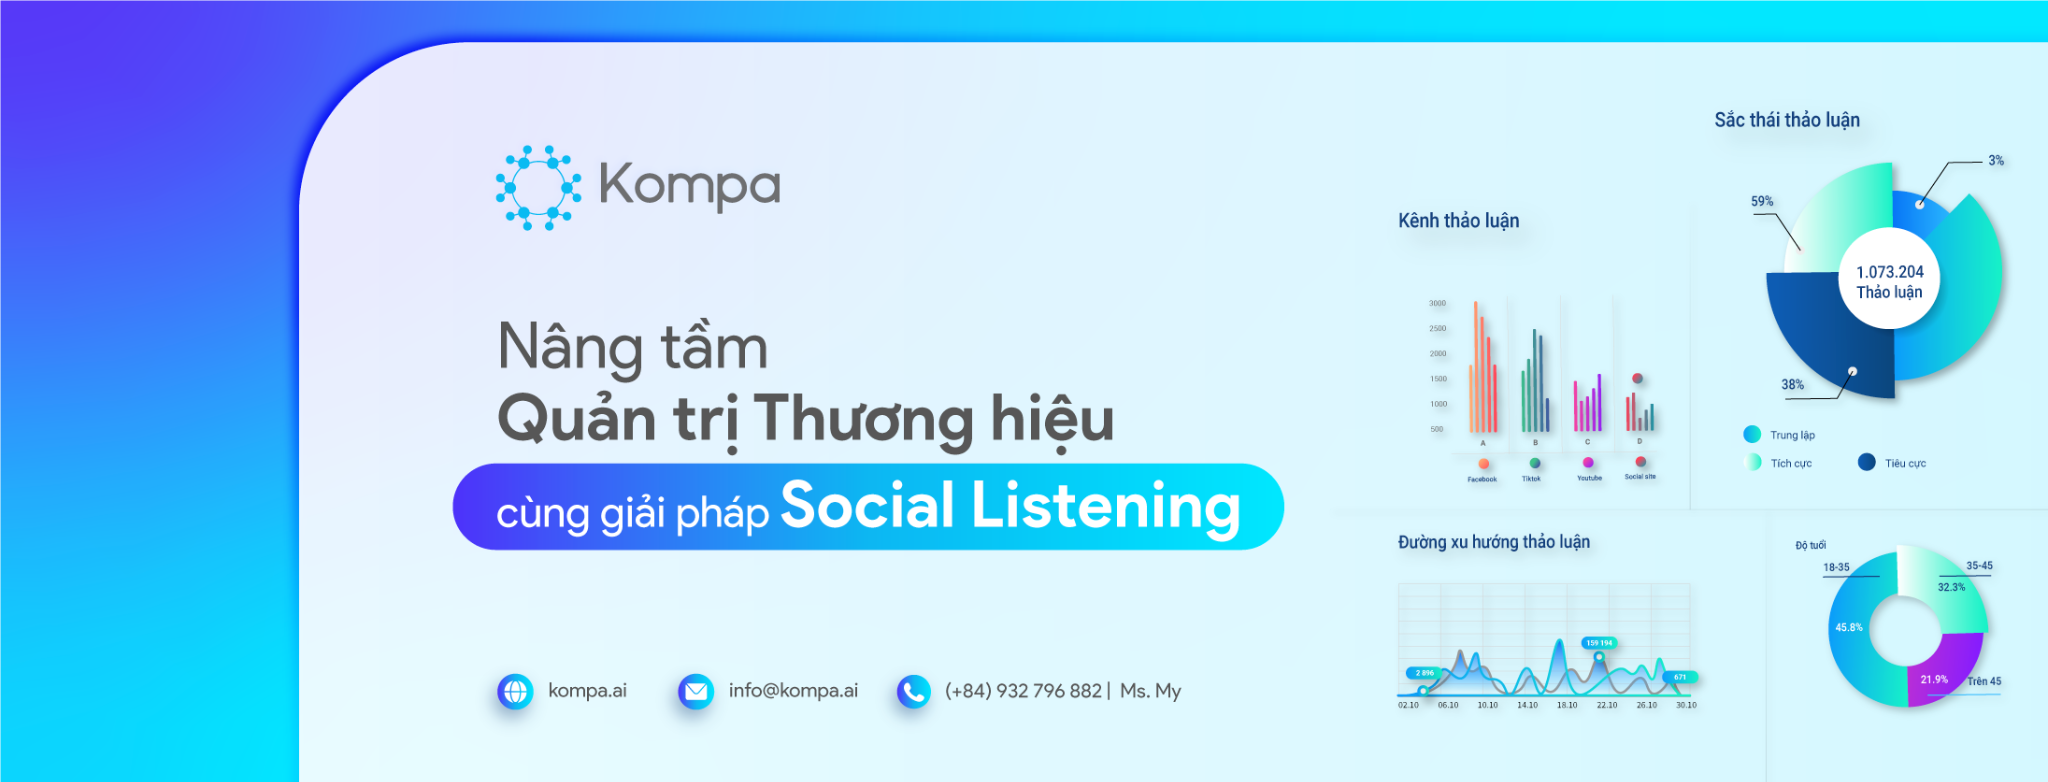 Kompa - Nâng tầm quản trị Thương hiệu cùng giải pháp Social Listening